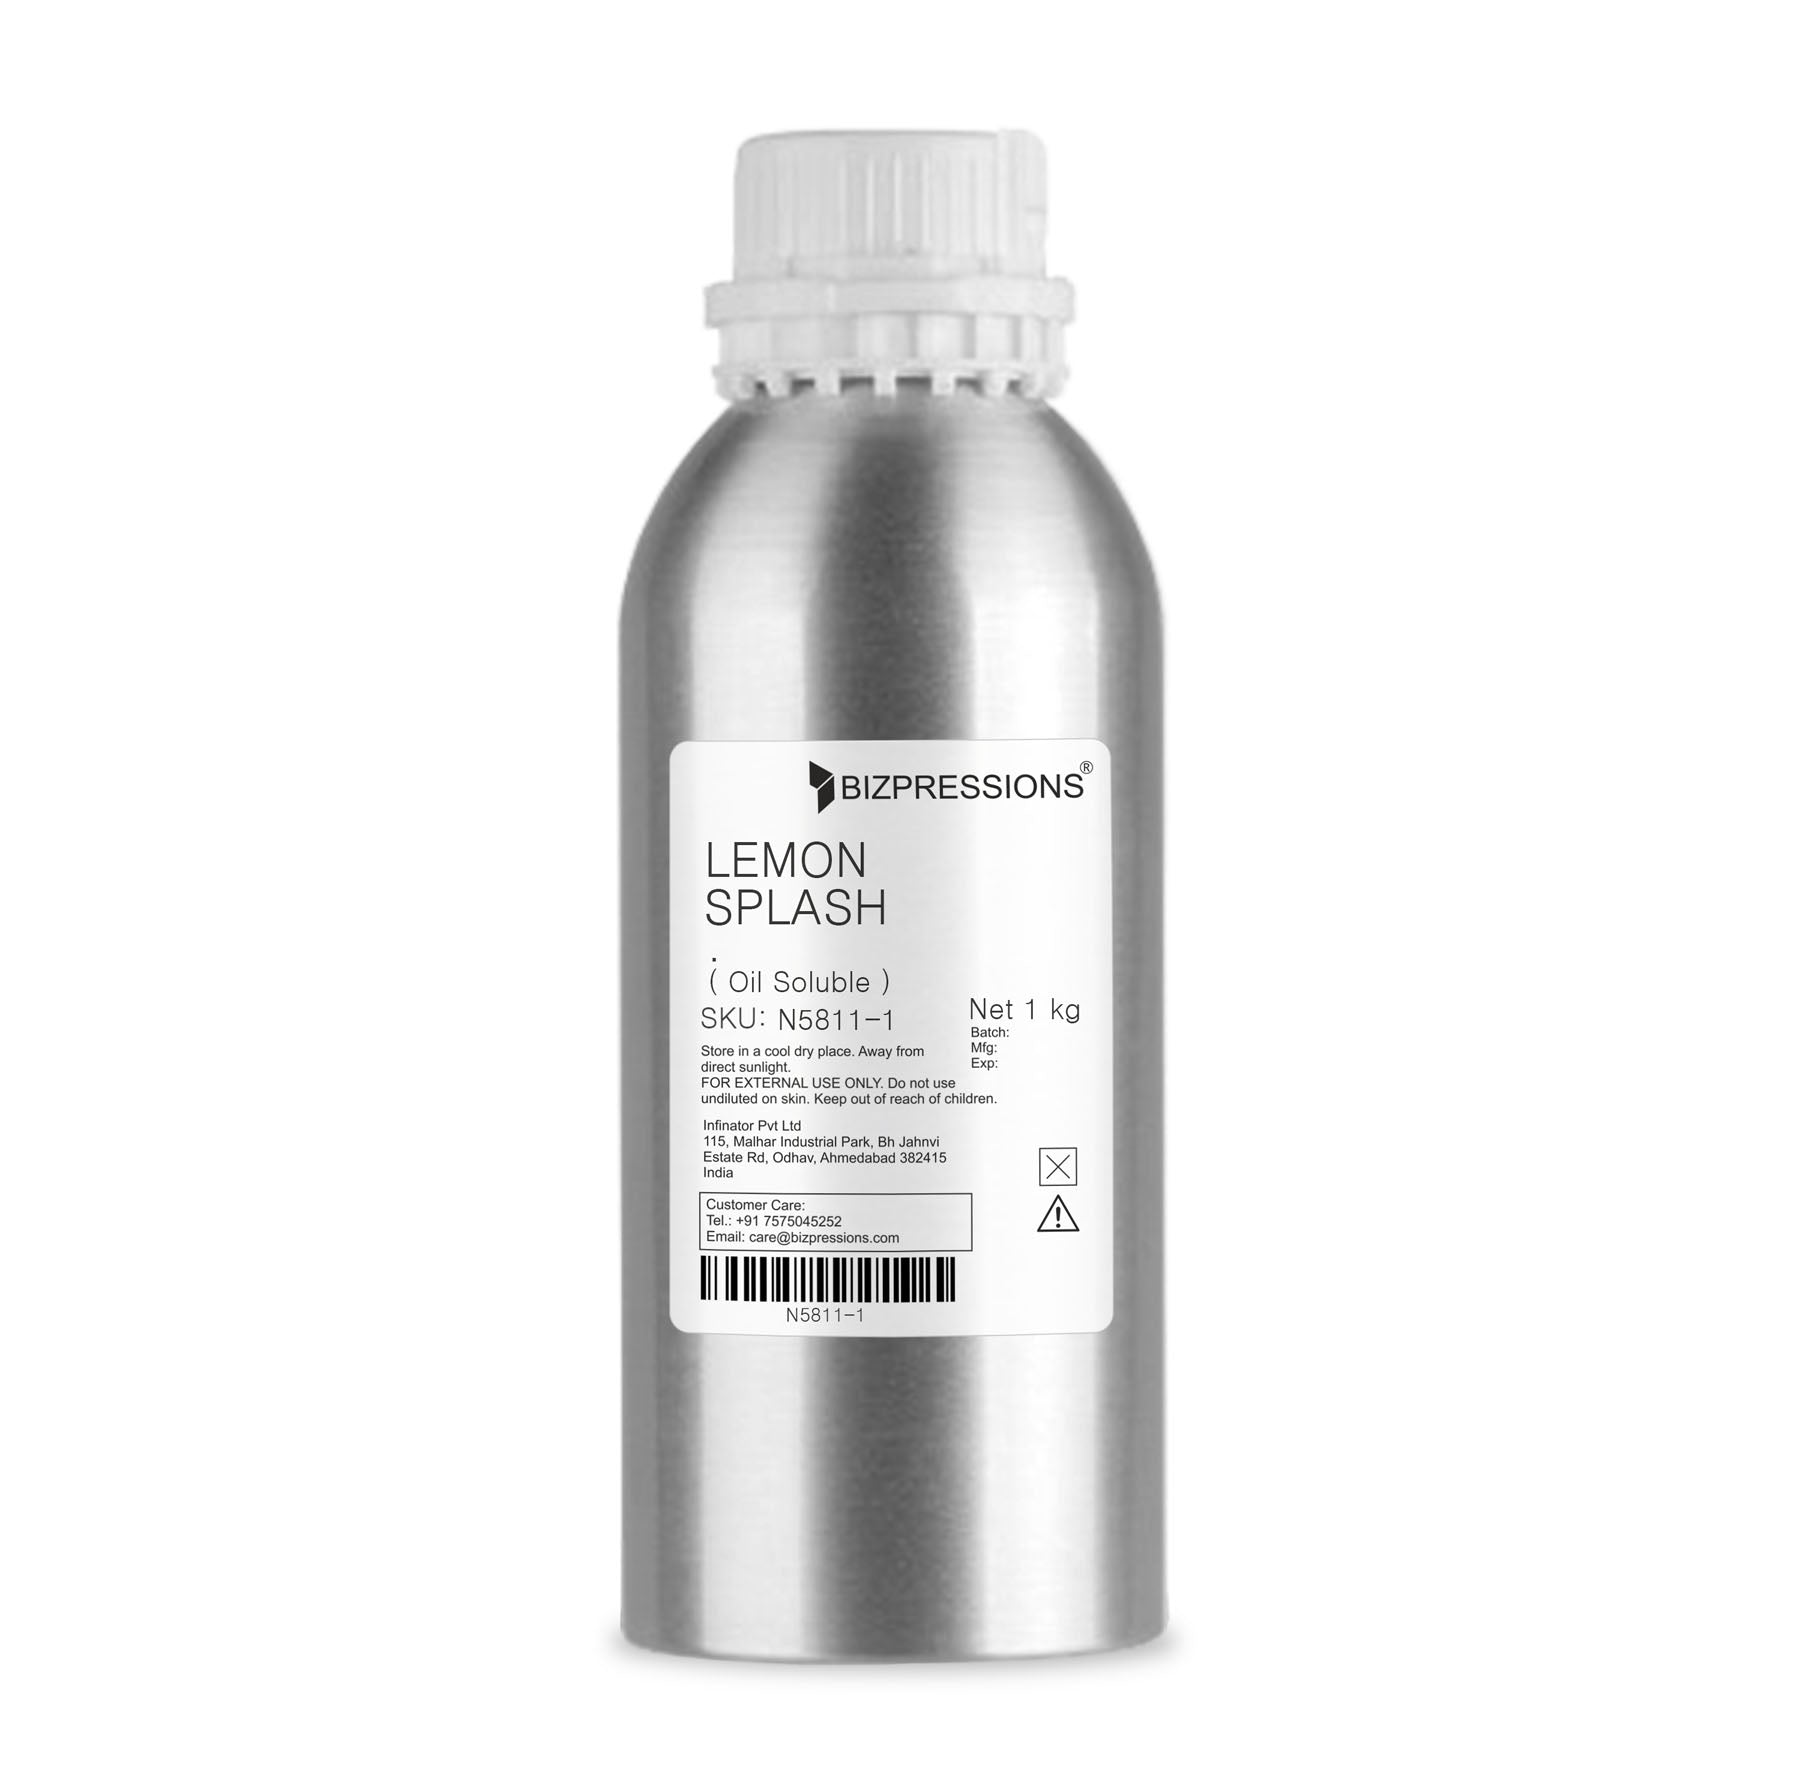 LEMON SPLASH - Fragrance ( Oil Soluble ) - 1 kg